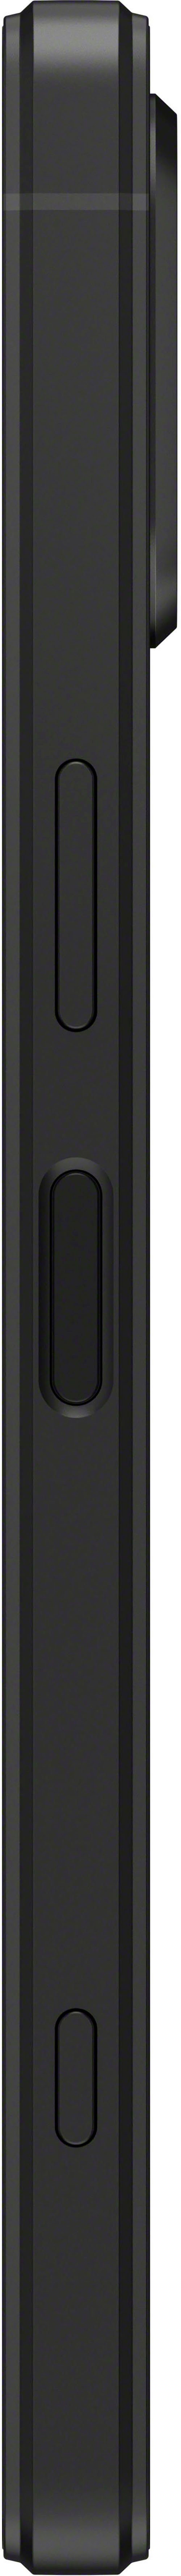 Sony cm/6,1 128 5V XPERIA 12 MP schwarz GB Speicherplatz, (15,49 Zoll, Kamera) Smartphone